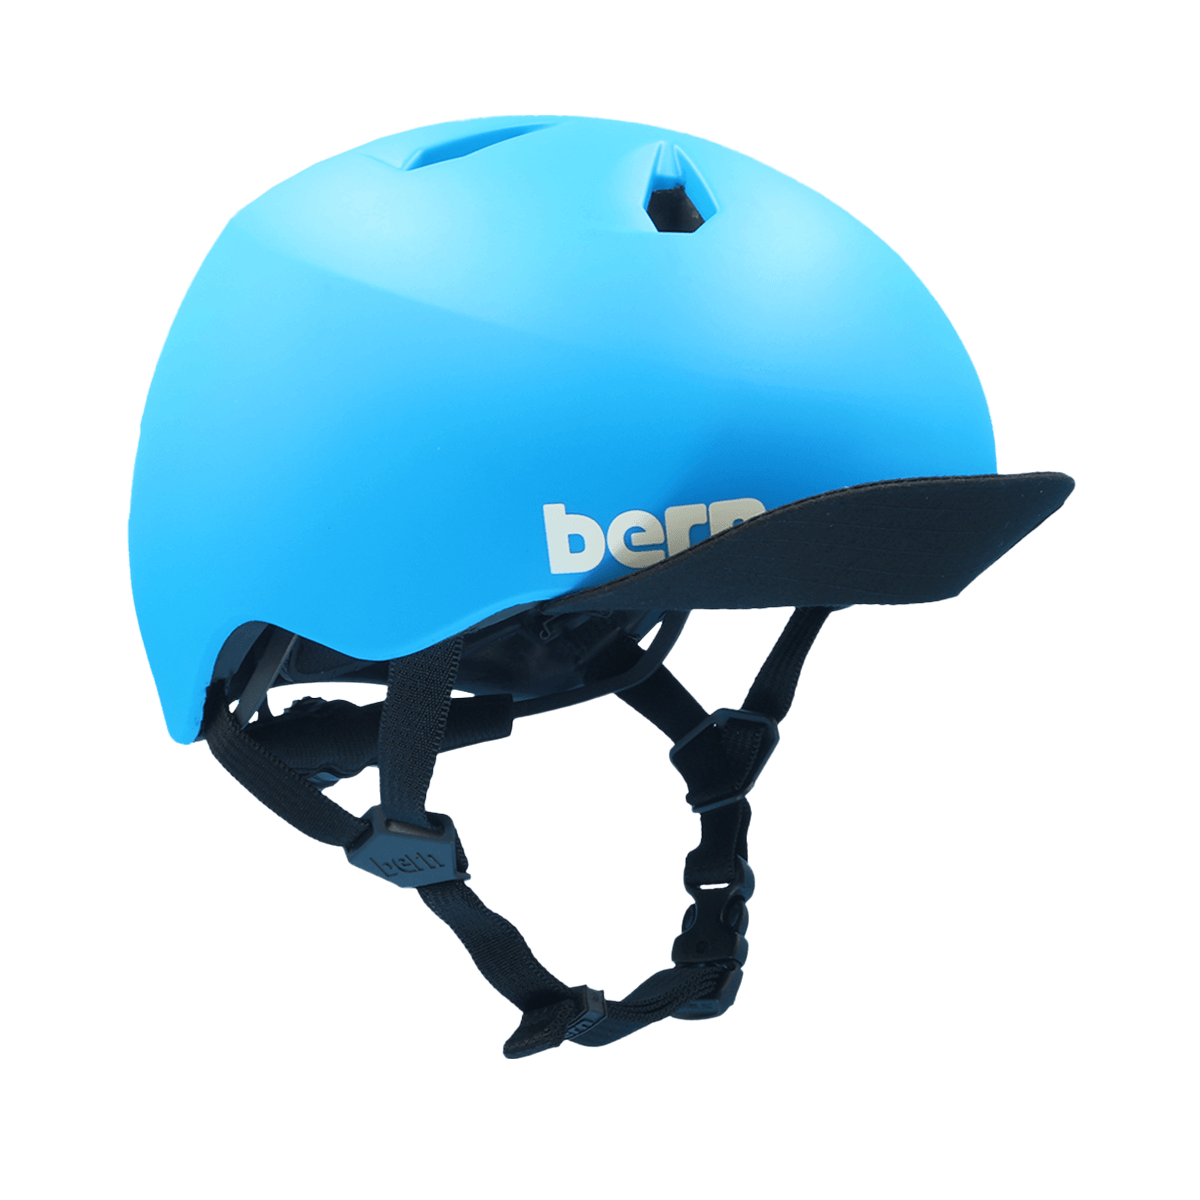 Nino DVRT Bike Helmet